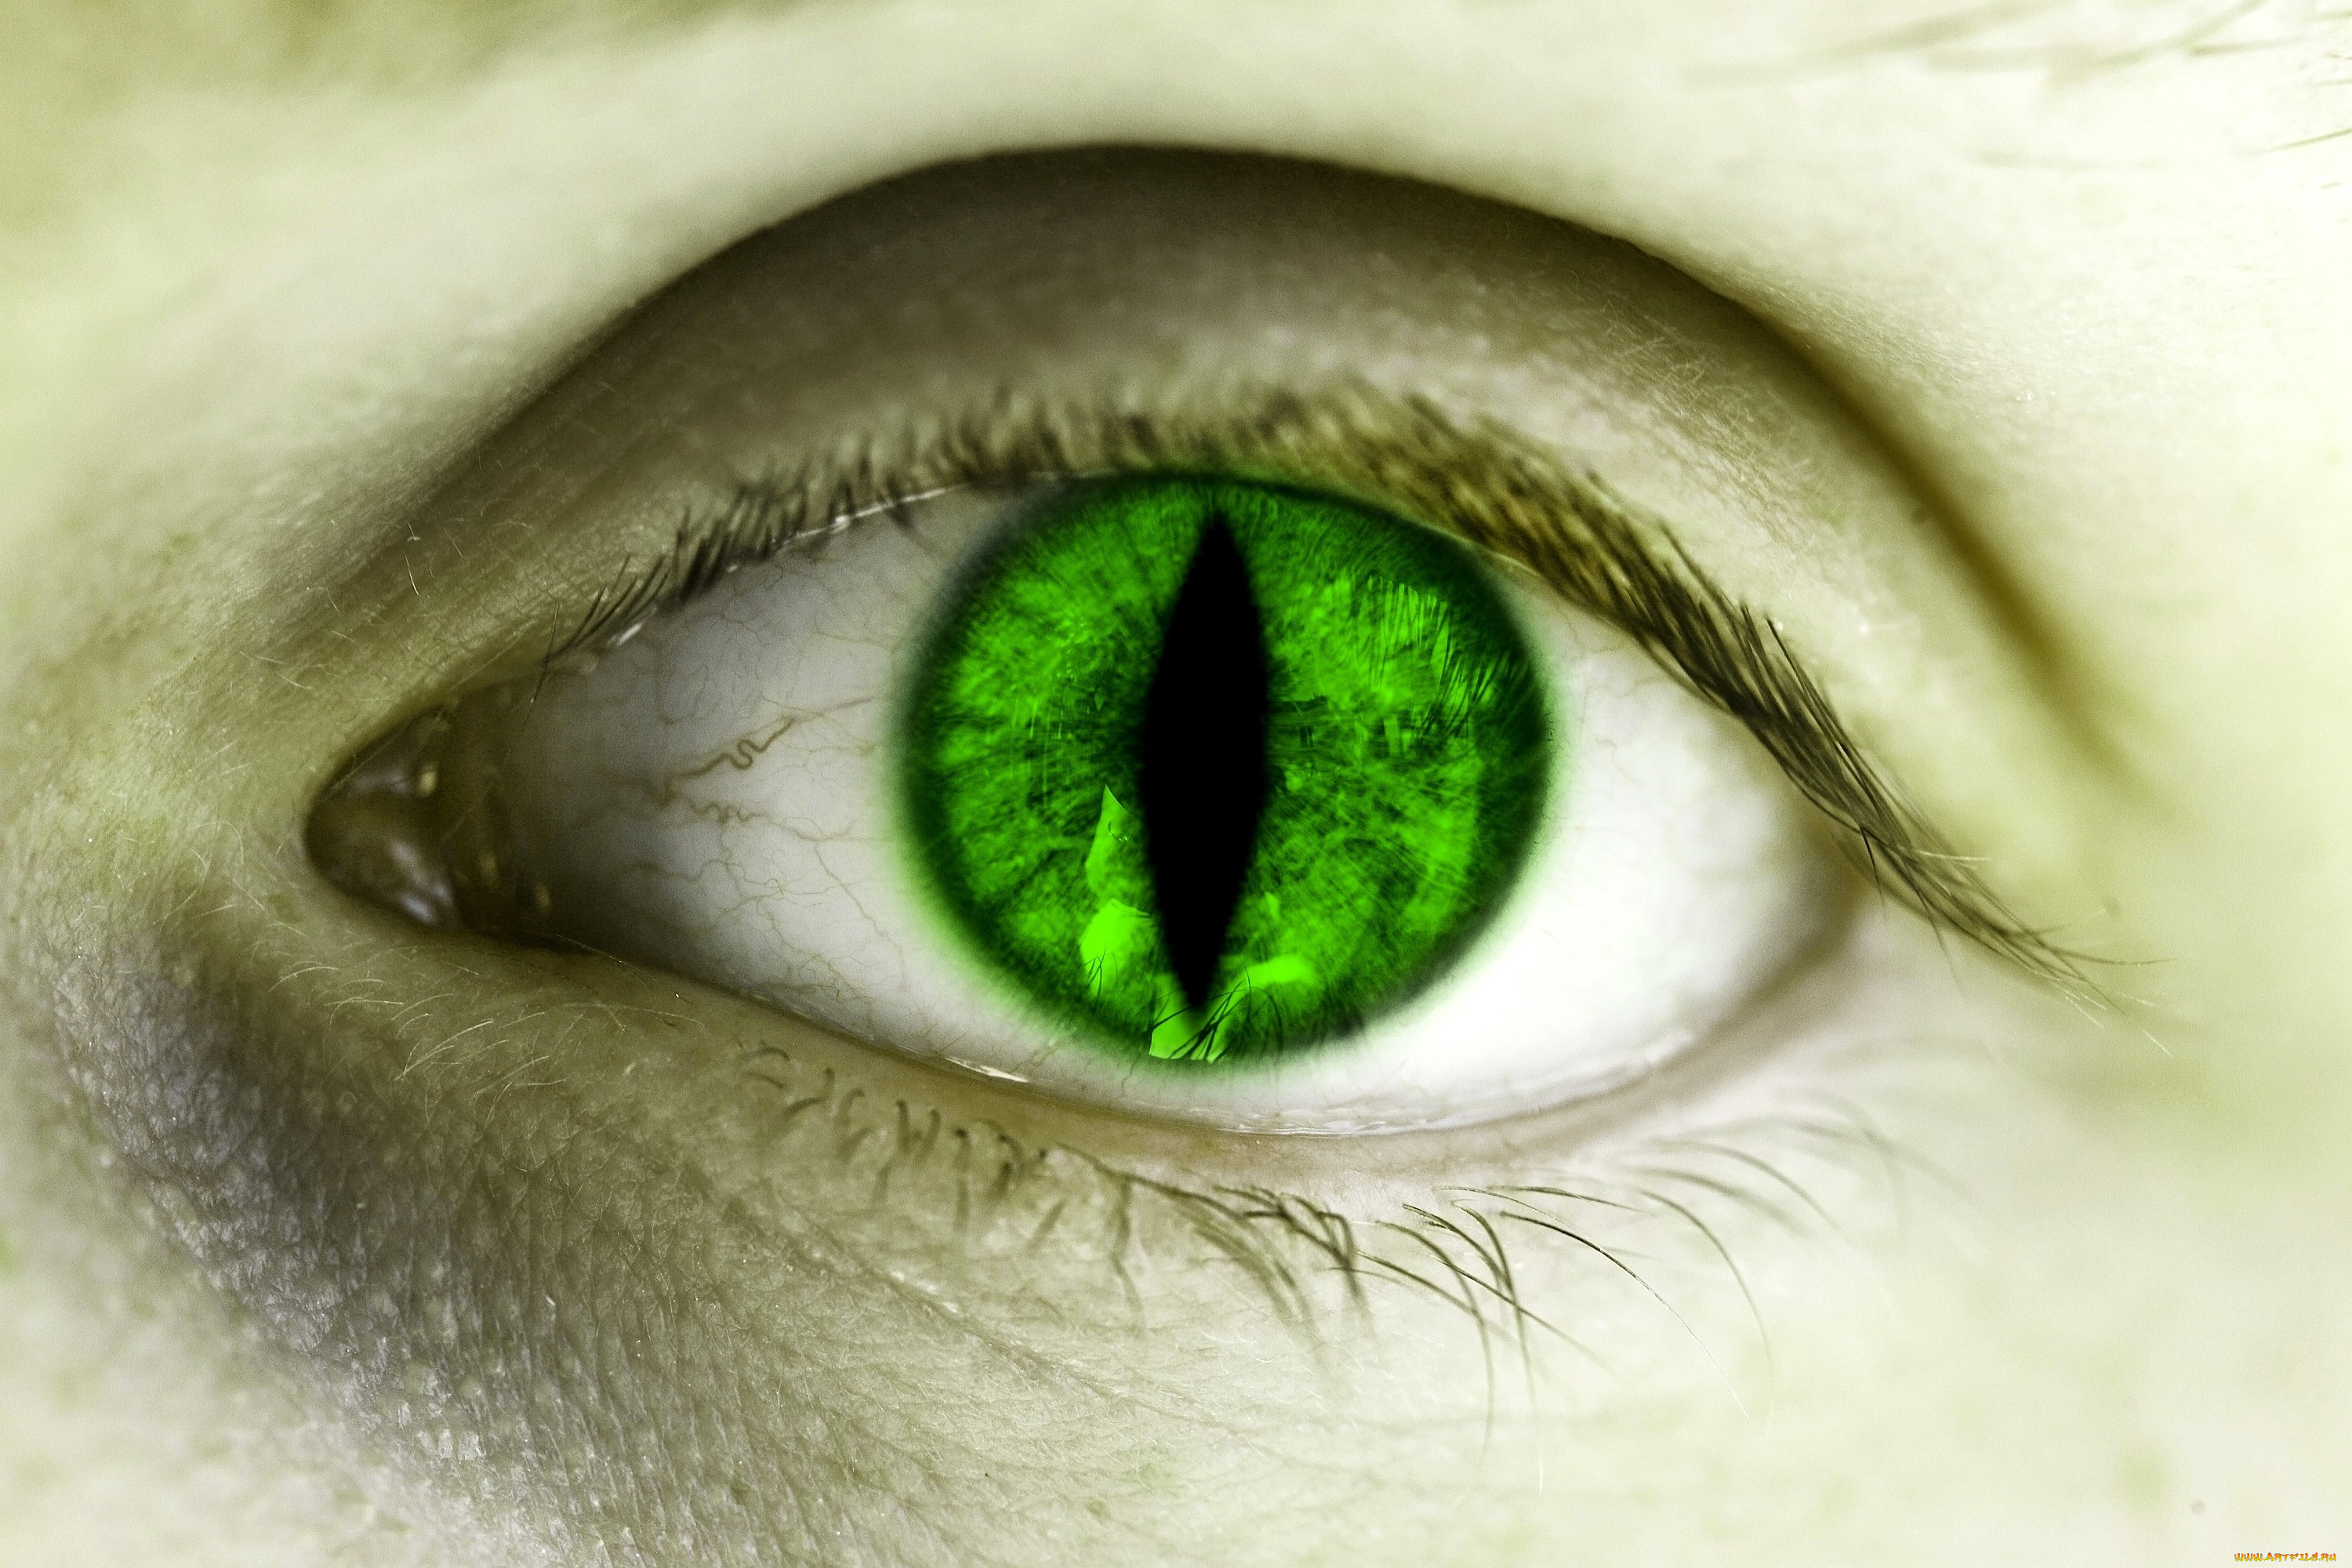 He got green eyes. Изумрудные глаза. Зелёные глаза. Изумрудно зеленые глаза. Зеленый зрачок.